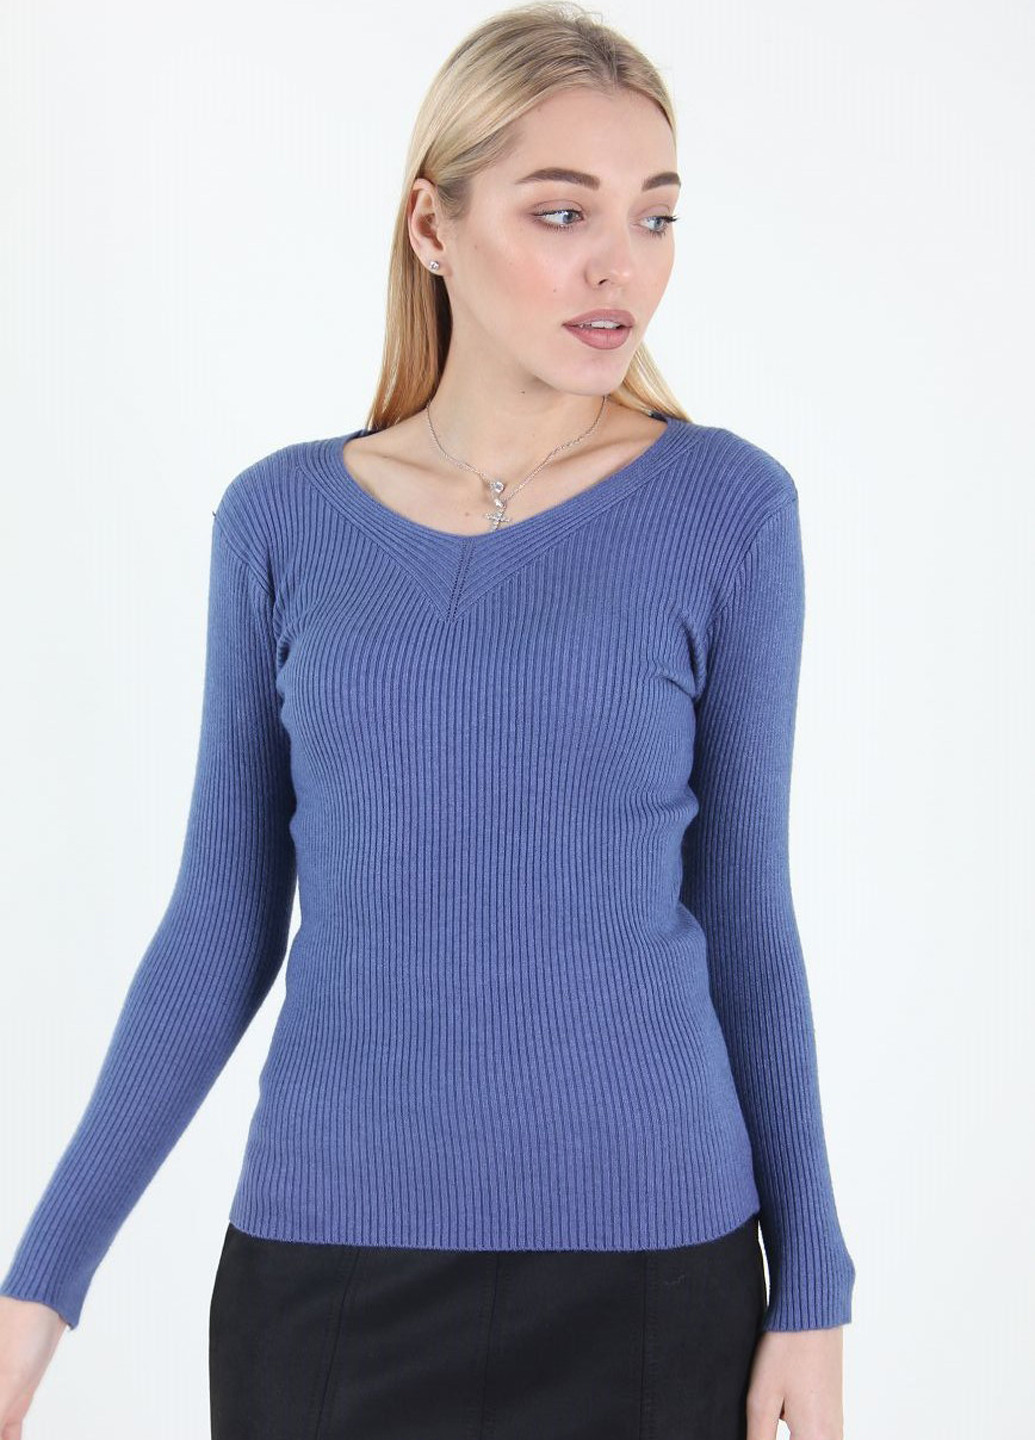 Васильковый демисезонный пуловер пуловер Ladies Fasfion